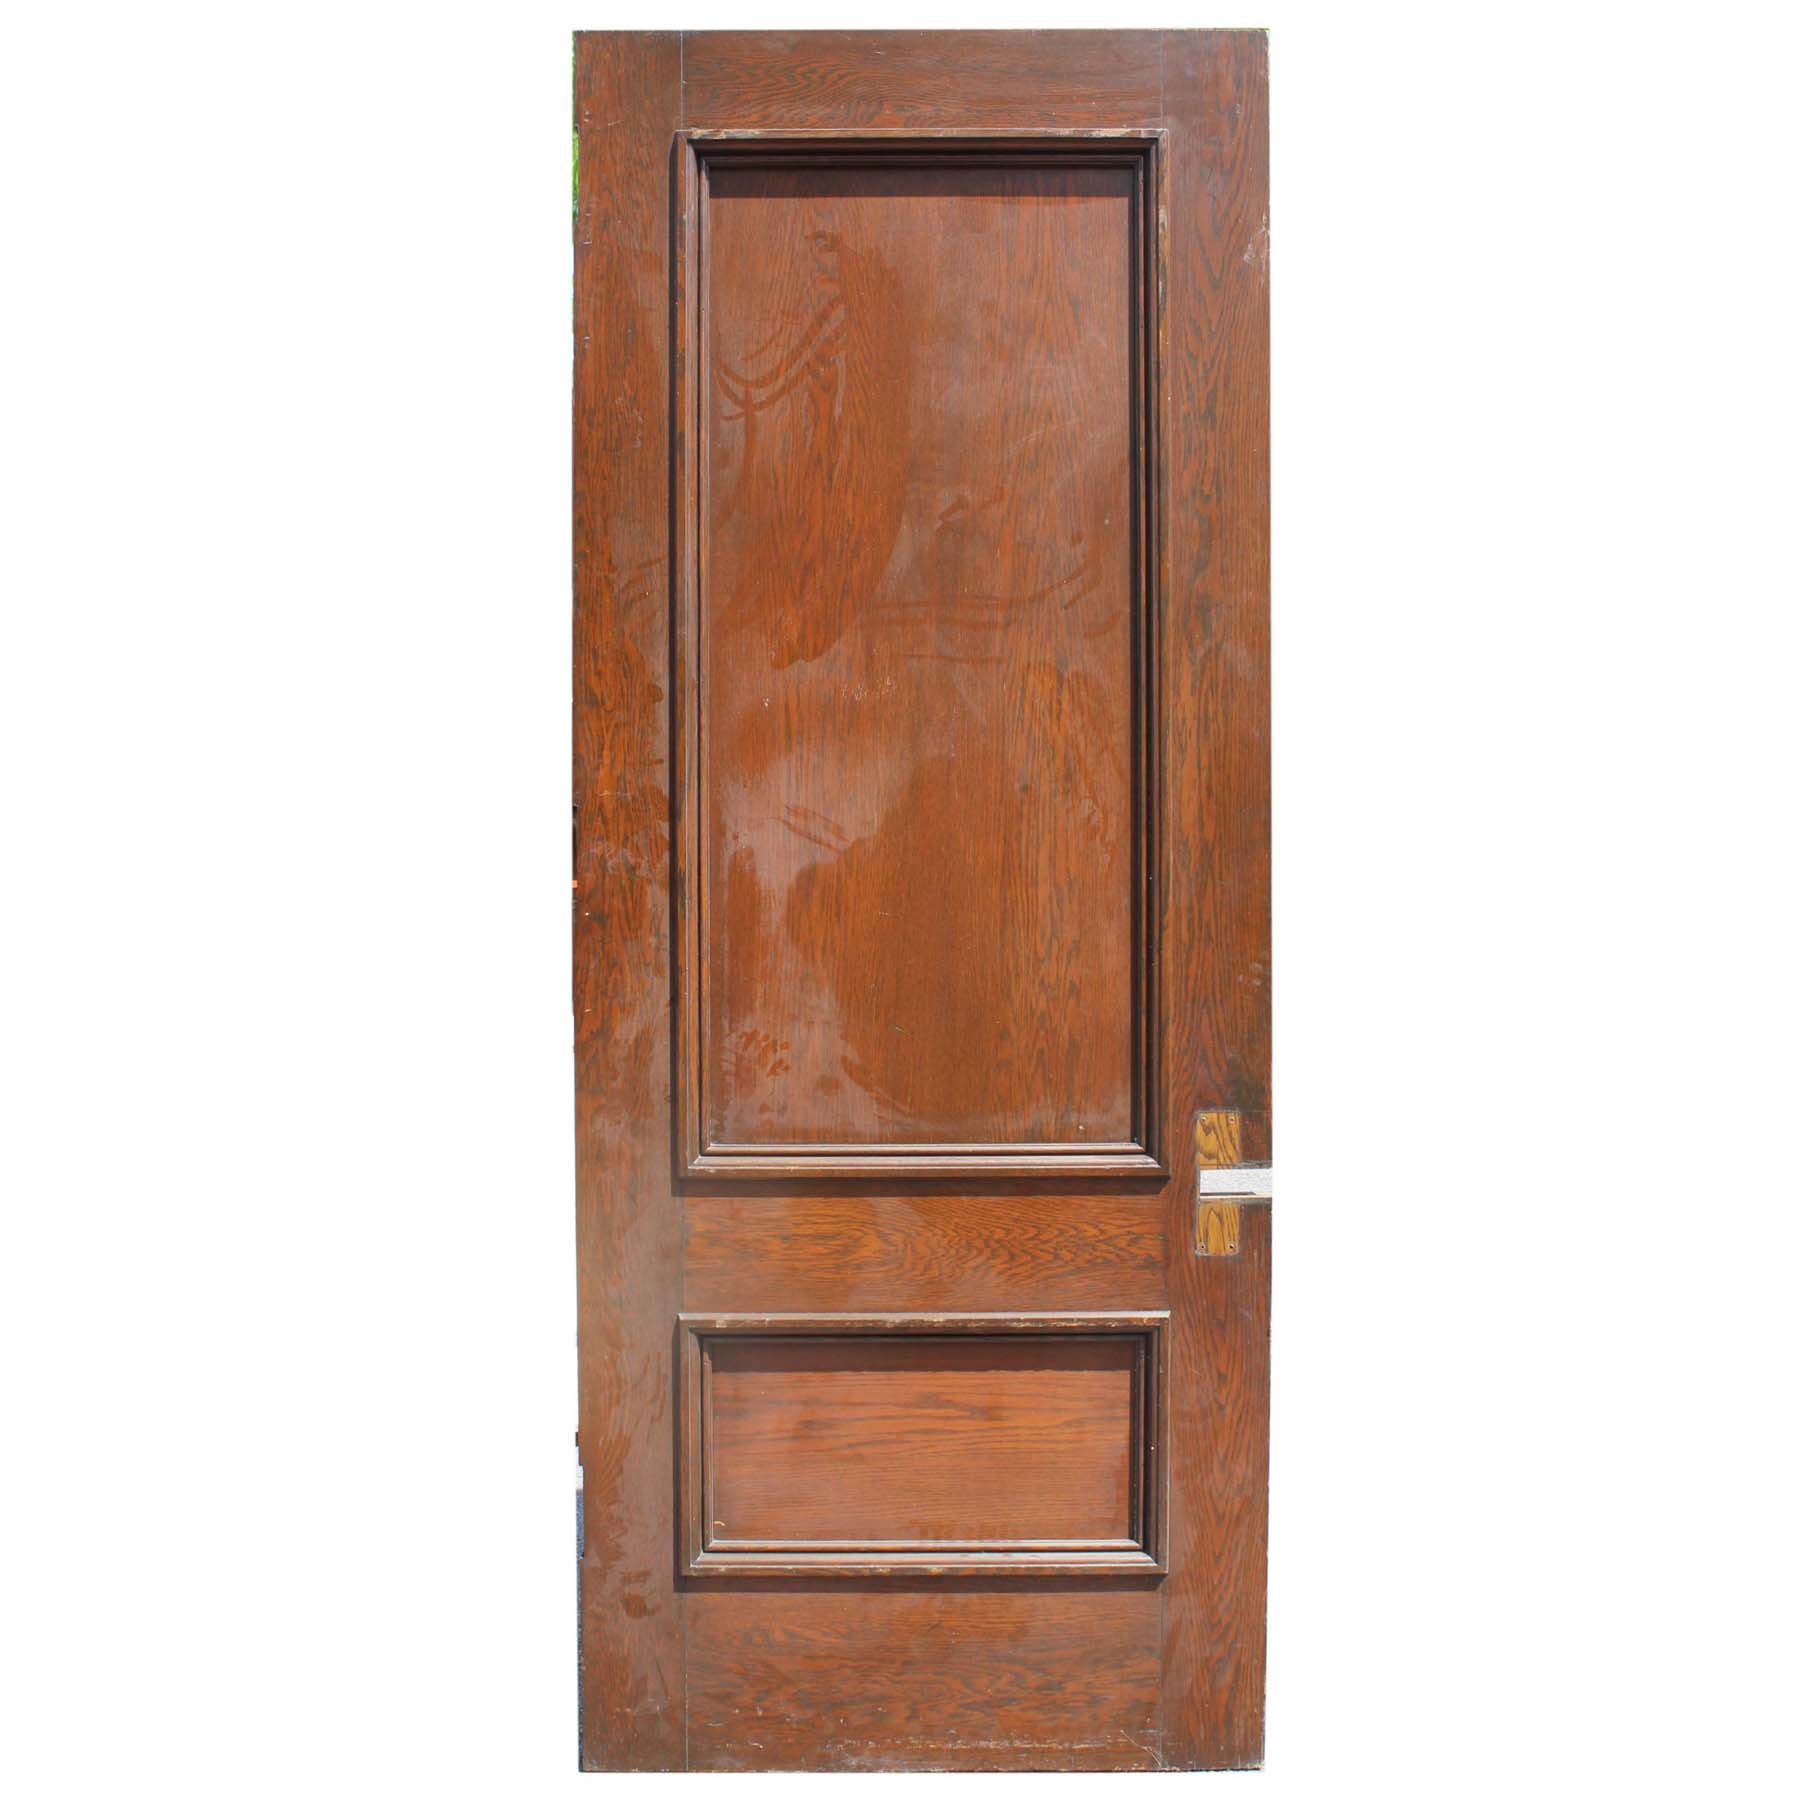 SOLD Salvaged 38” Solid Oak Door -0